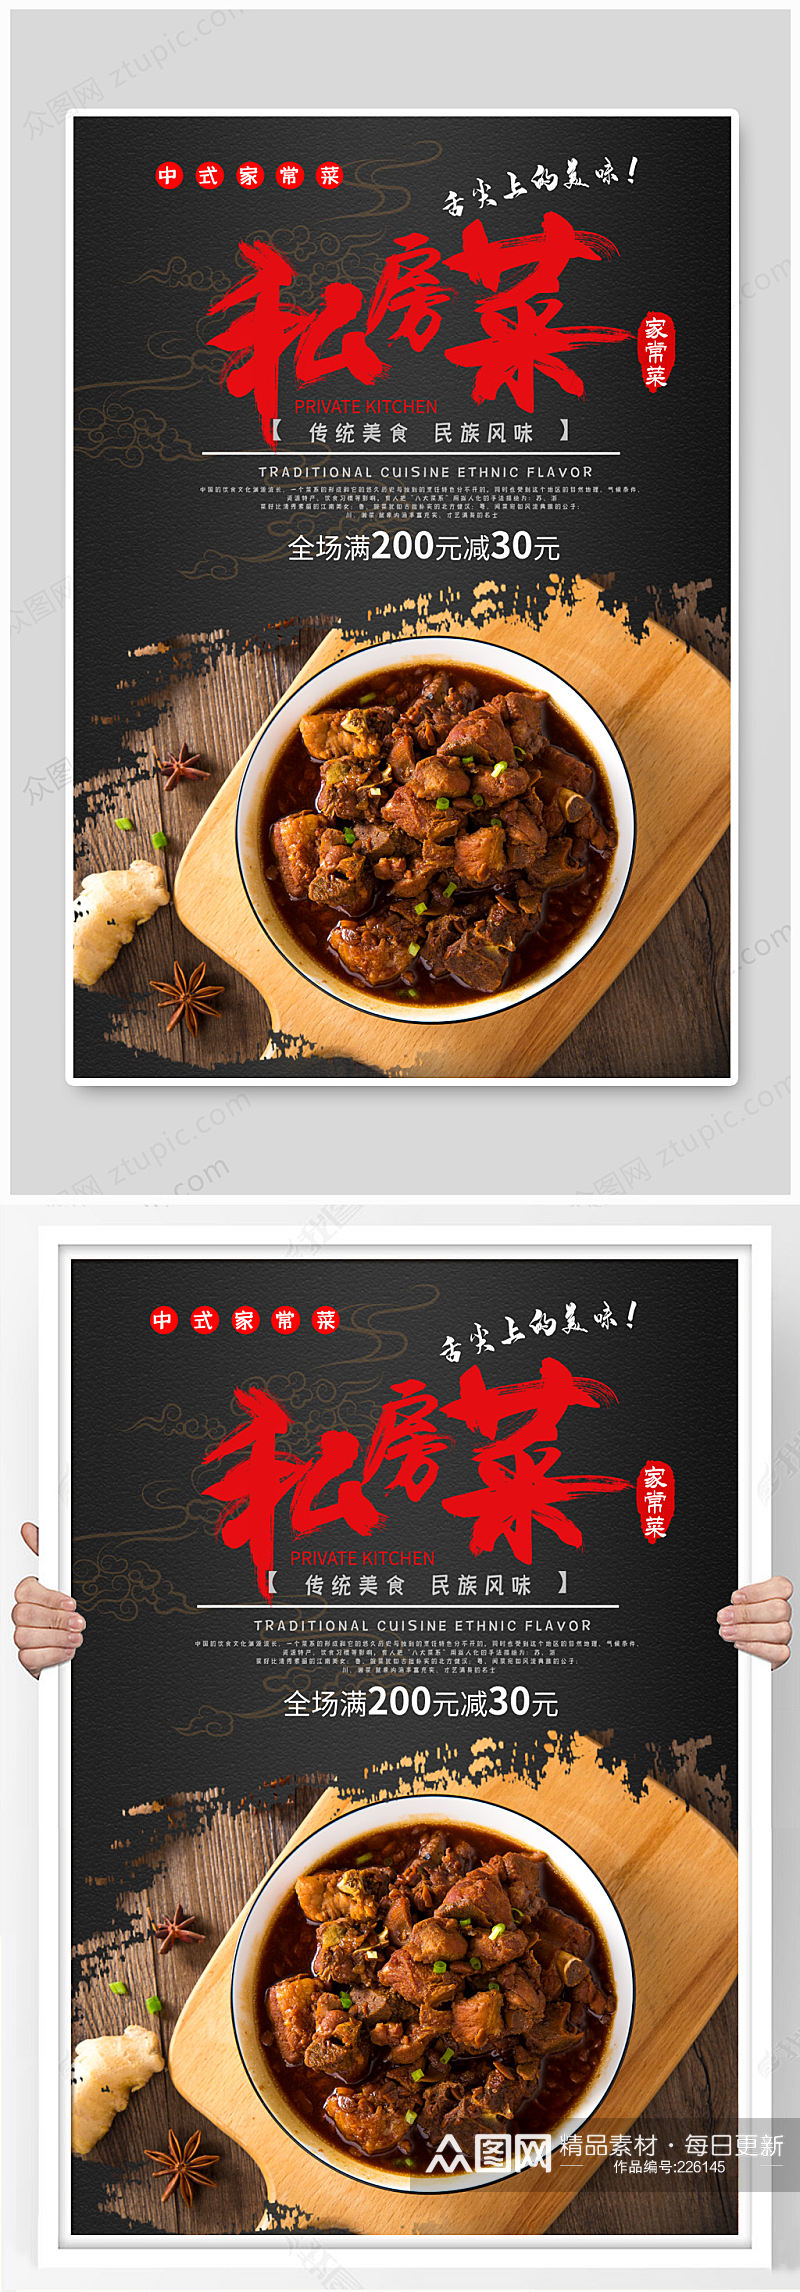 中式私房家常菜海报素材